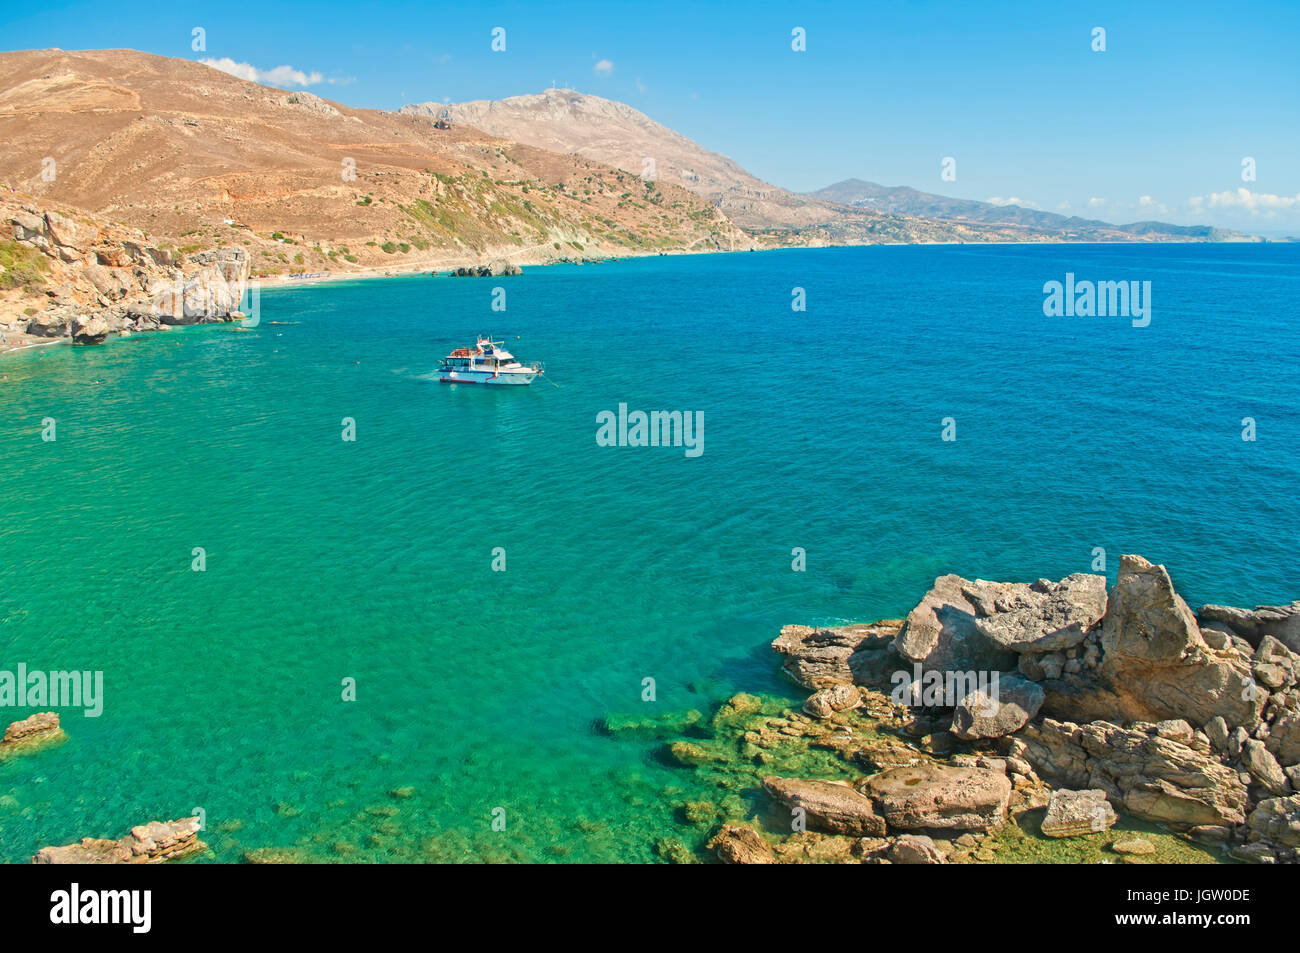 Petite bateau touristique sur la plage des palmiers dans des eaux cristallines de la Méditerranée en Crète, Grèce Banque D'Images